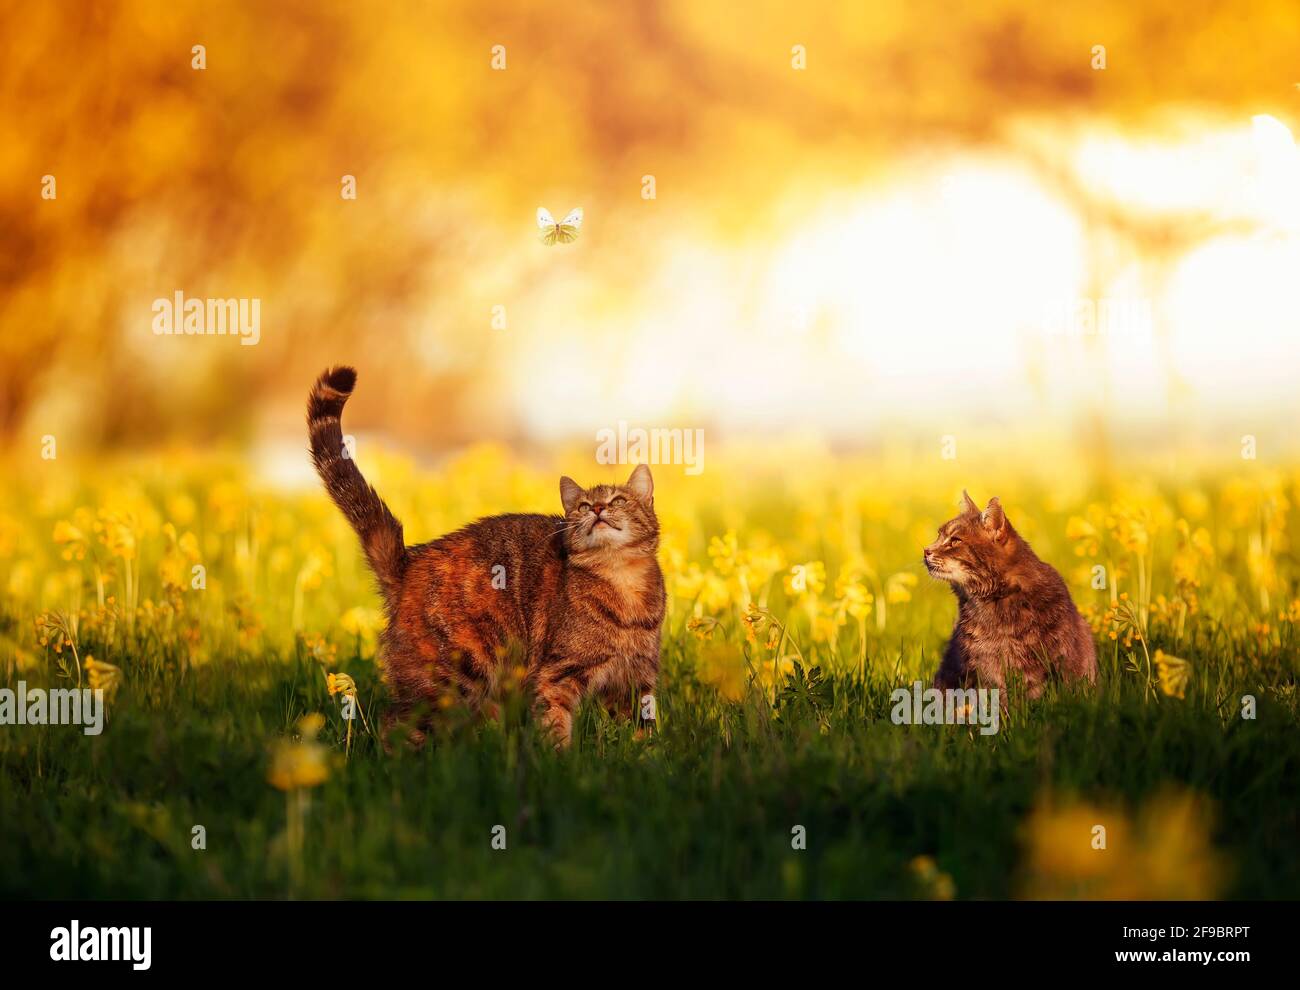 Zwei niedliche Tabby-Katzen wandern durch eine sonnige Sommerwiese Und beobachten Sie, wie ein weißer Schmetterling vorbeifliegt Stockfoto